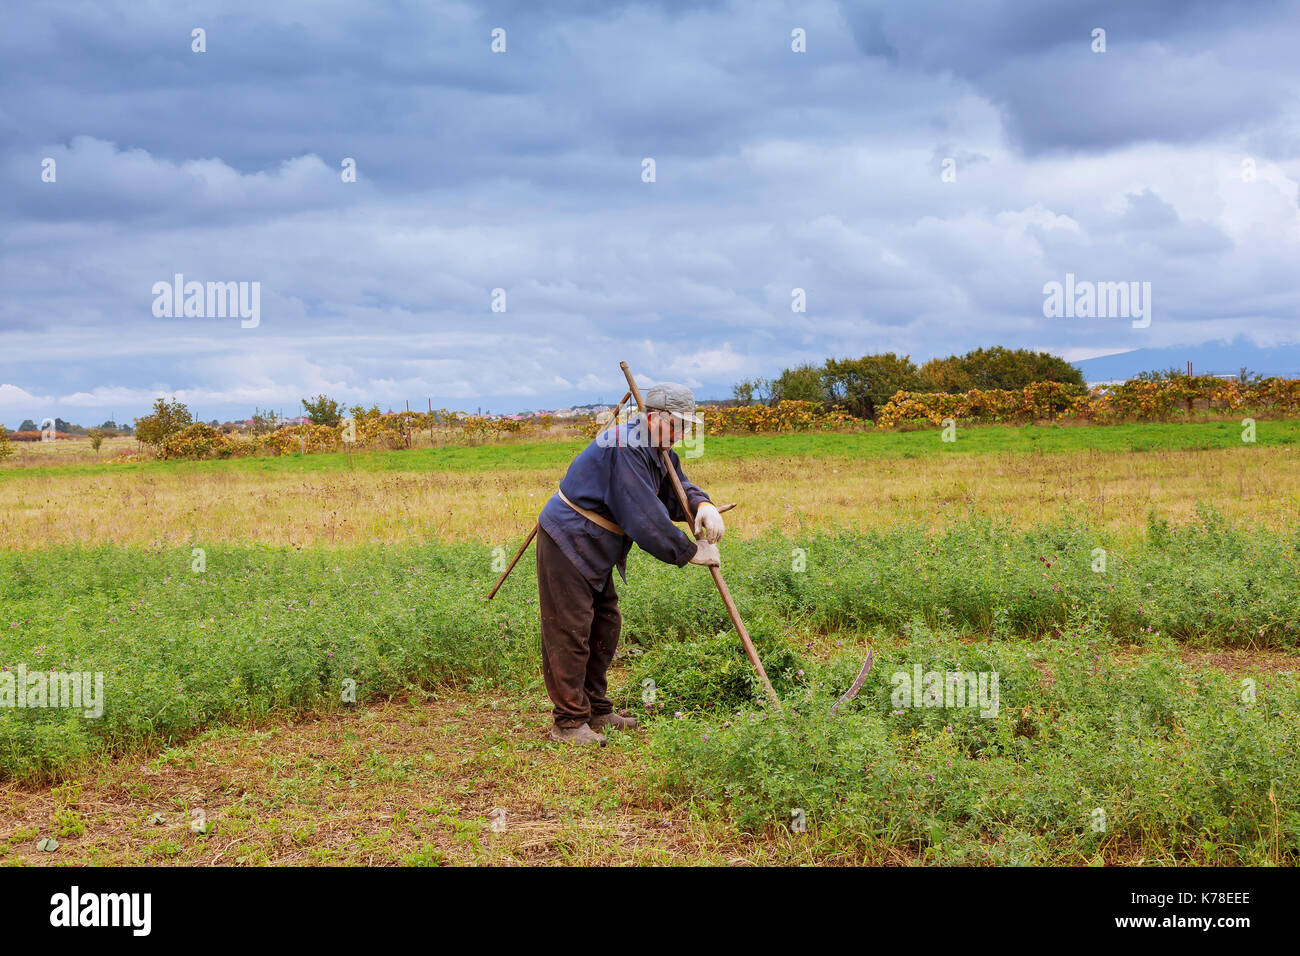 Portrait eines älteren grauhaarigen Mann, der Sense mäht Gras in einer Wiese. Traditionelle mähen das Gras mit der Sense. Stockfoto